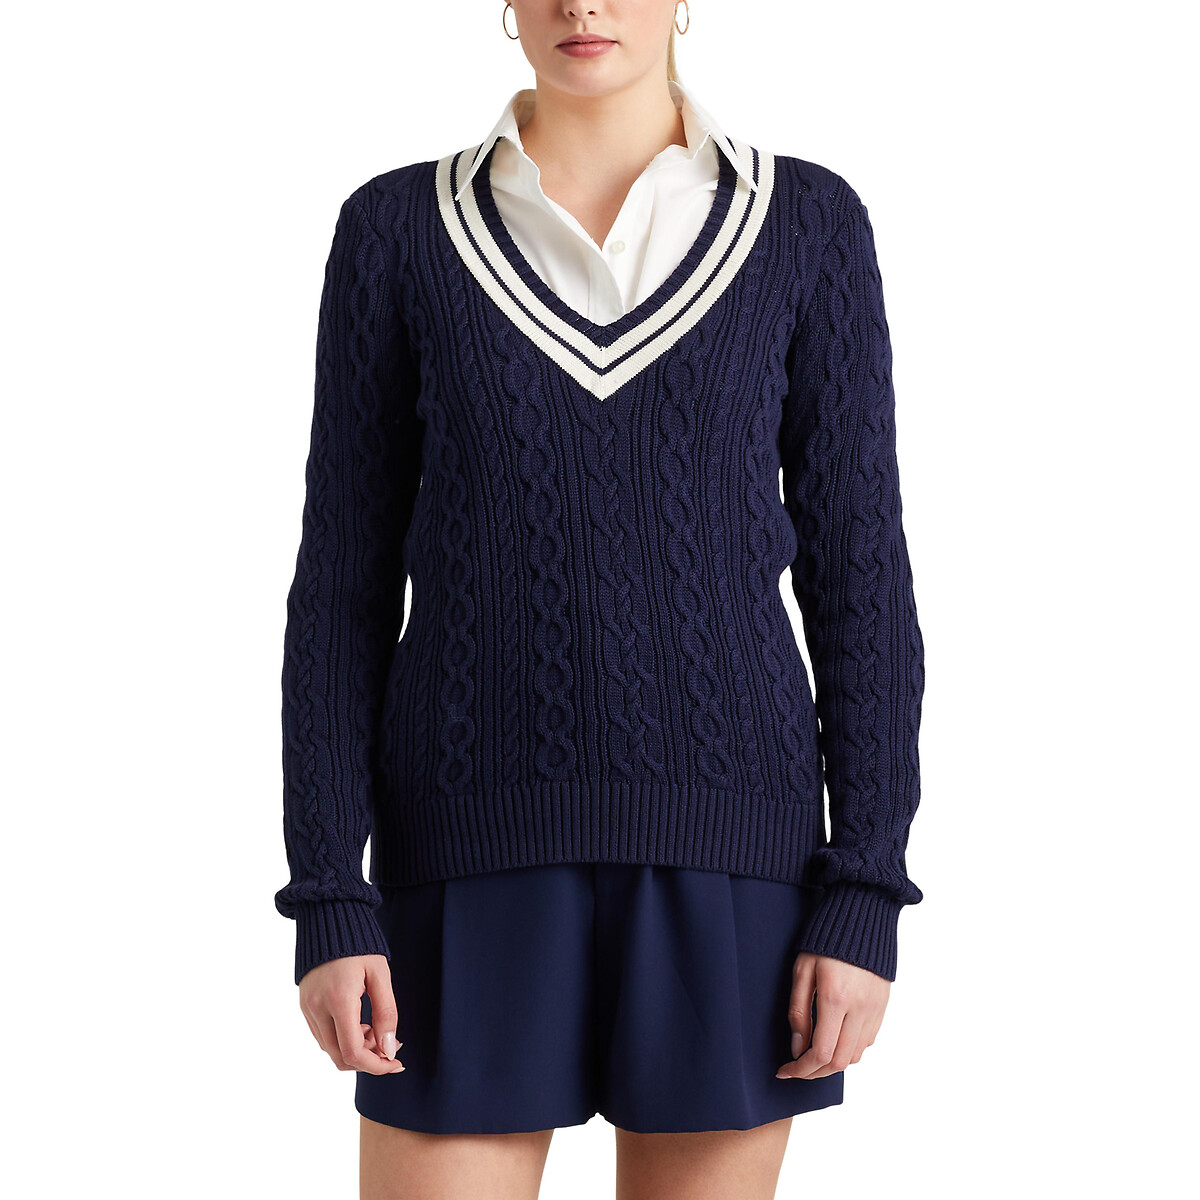 Пуловер с витым узором M синий пуловер с v образным вырезом xs бежевый